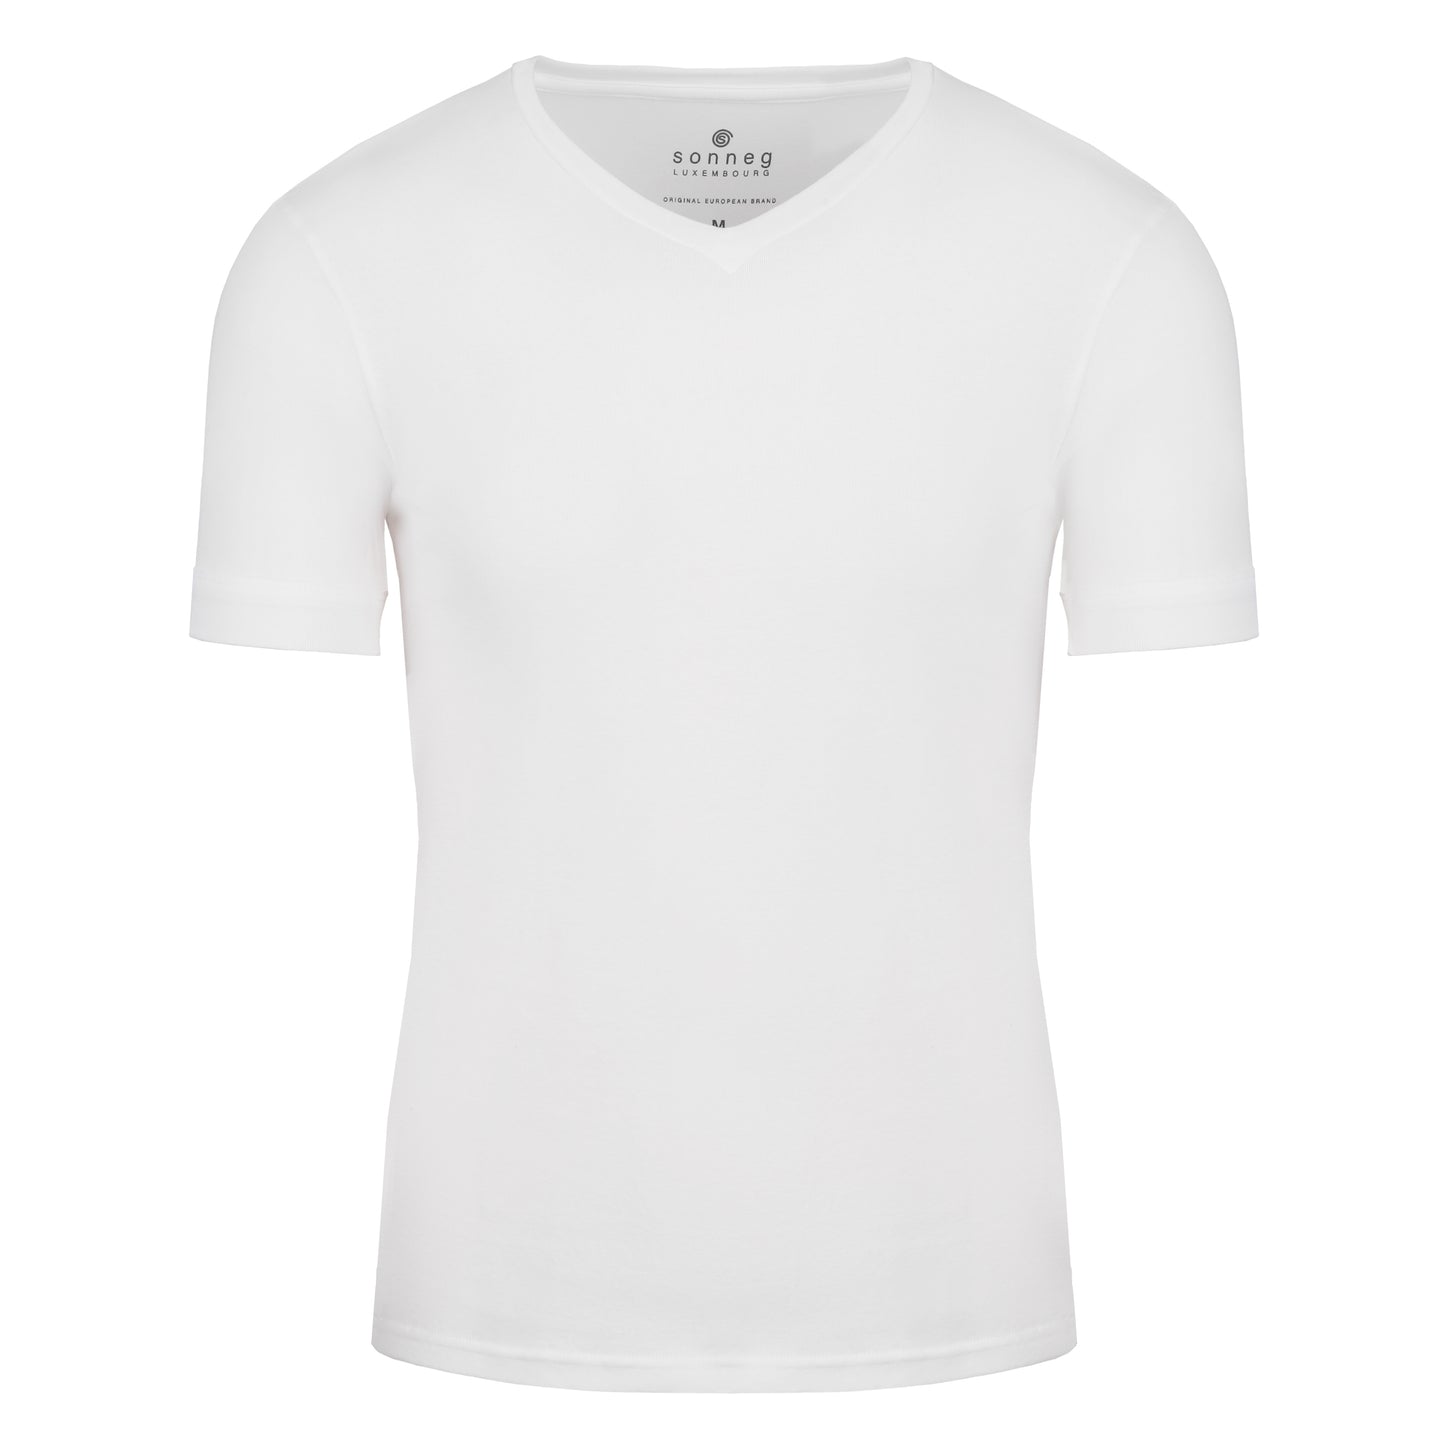 Weißes T-Shirt mit V-Ausschnitt für Herren – Packung mit 2 oder 4 T-Shirts